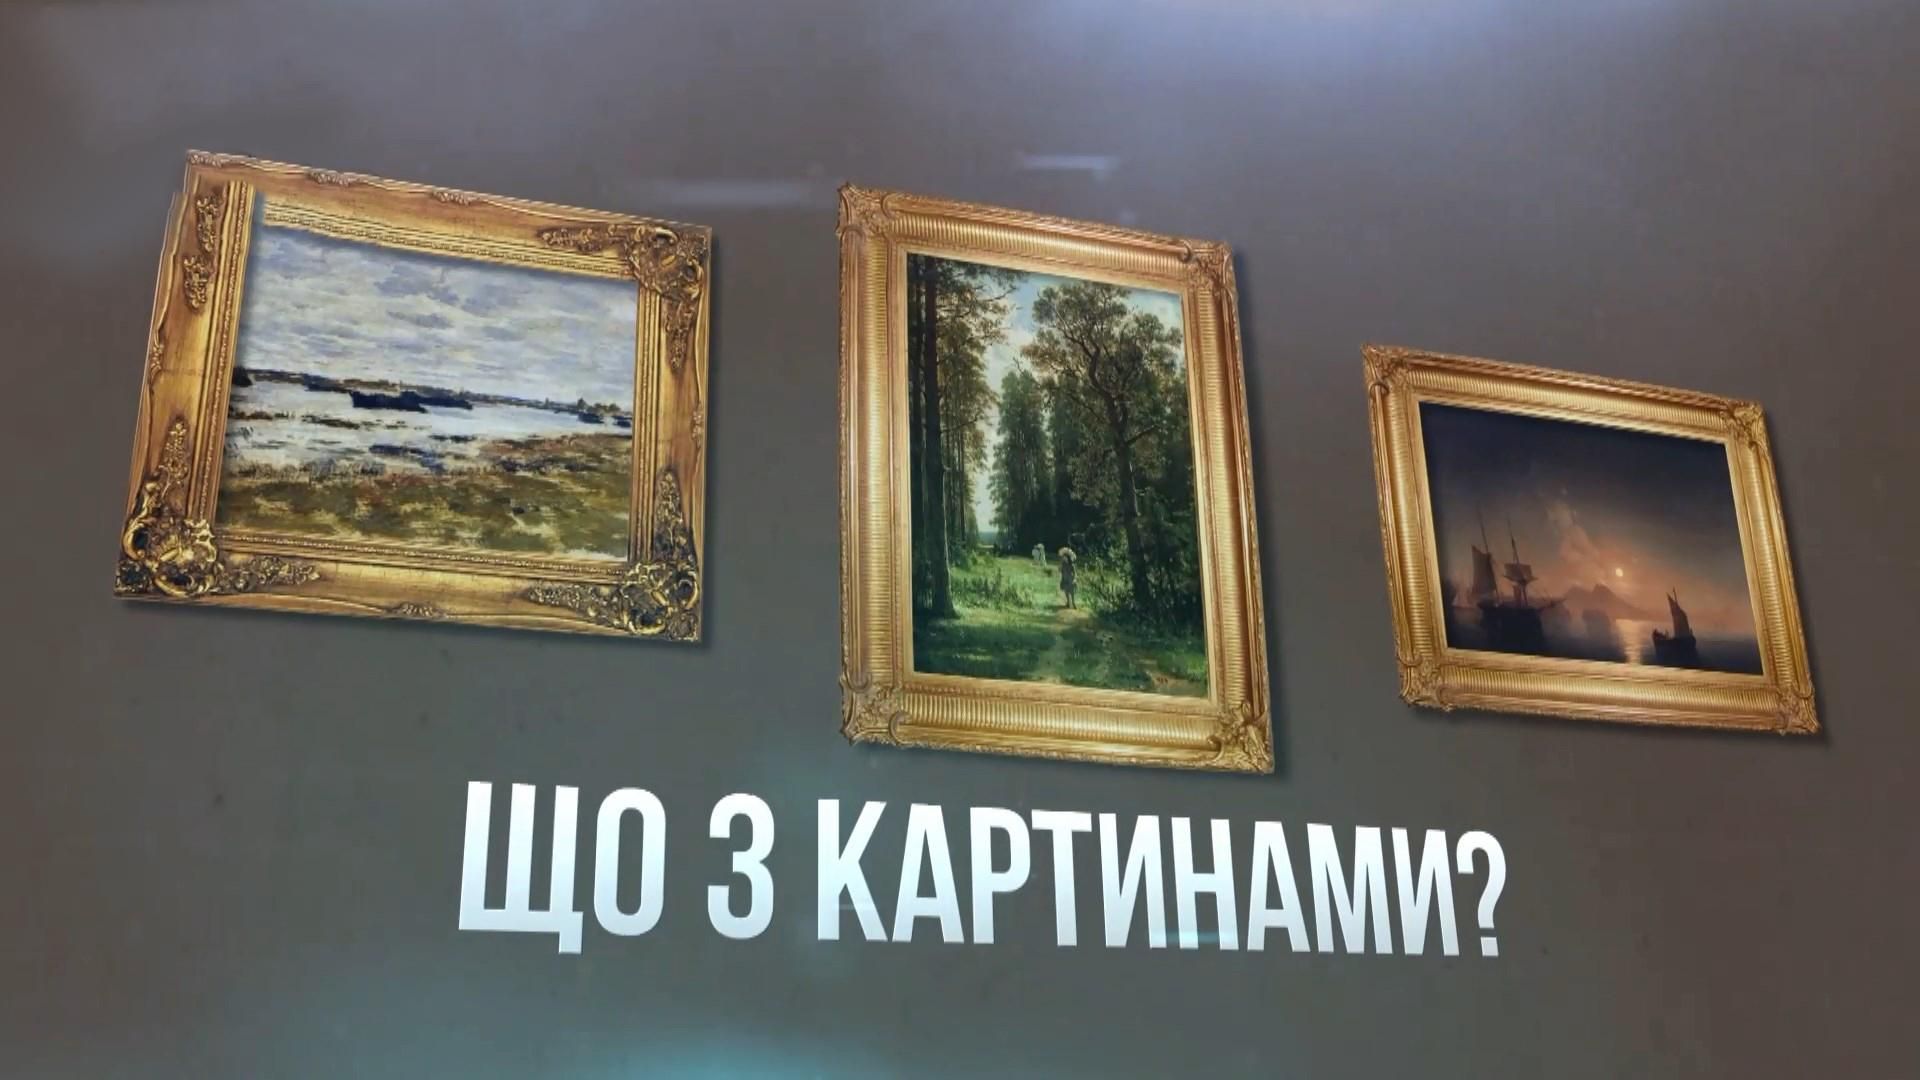 Как российским спецслужбам удалось похитить из Мариуполя картины на 1,5 миллиона долларов